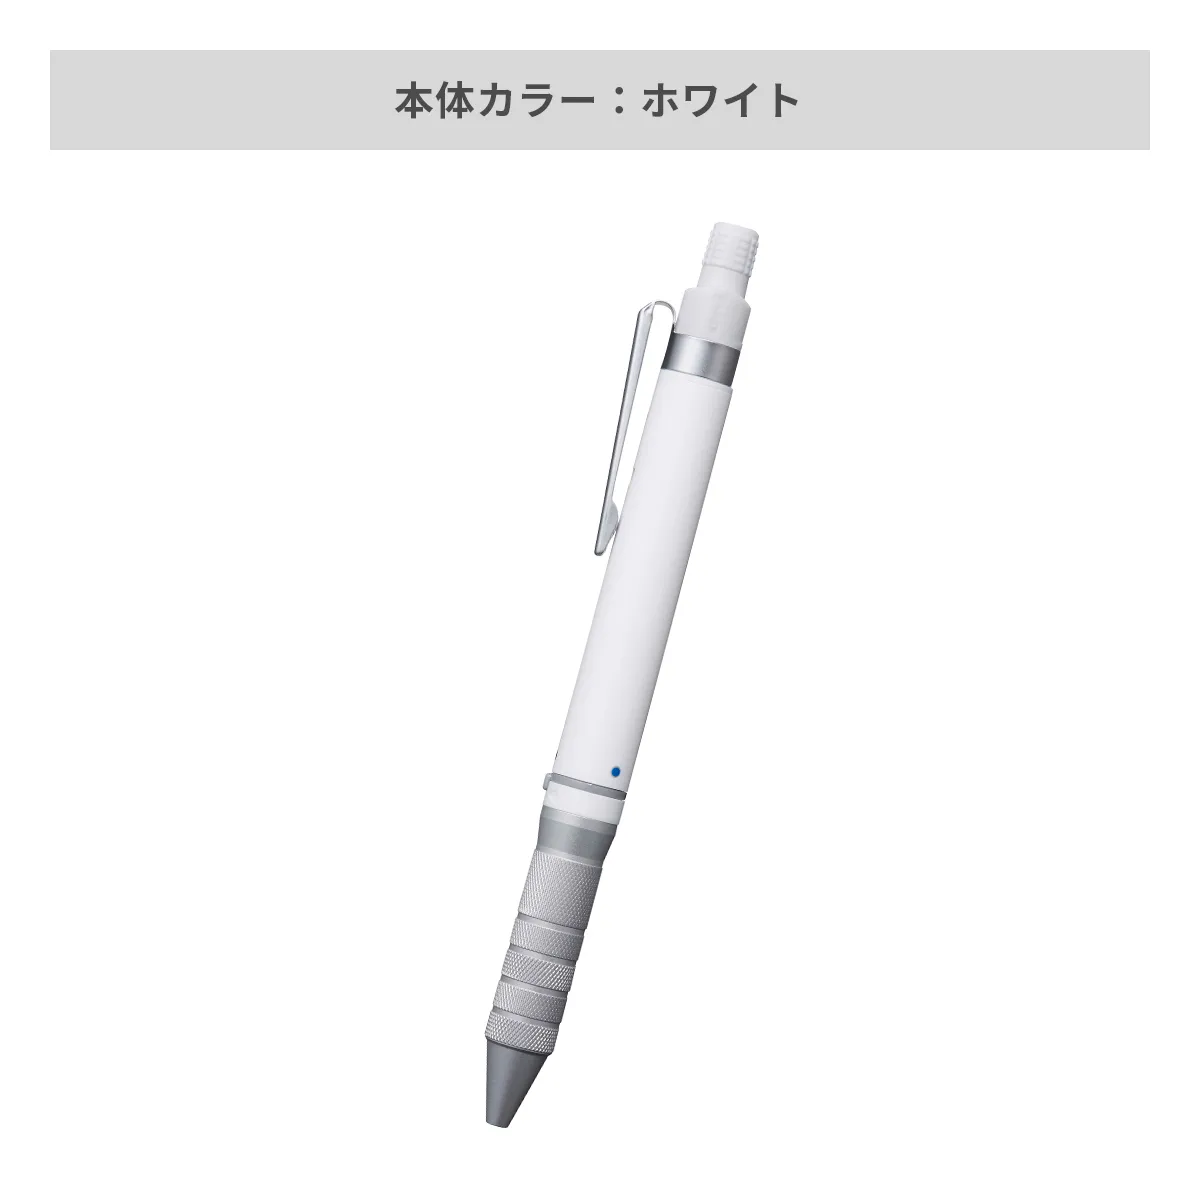 三菱鉛筆 ユニボール アールイー3ビズ 0.5mm【名入れボールペン / パッド印刷】 画像8